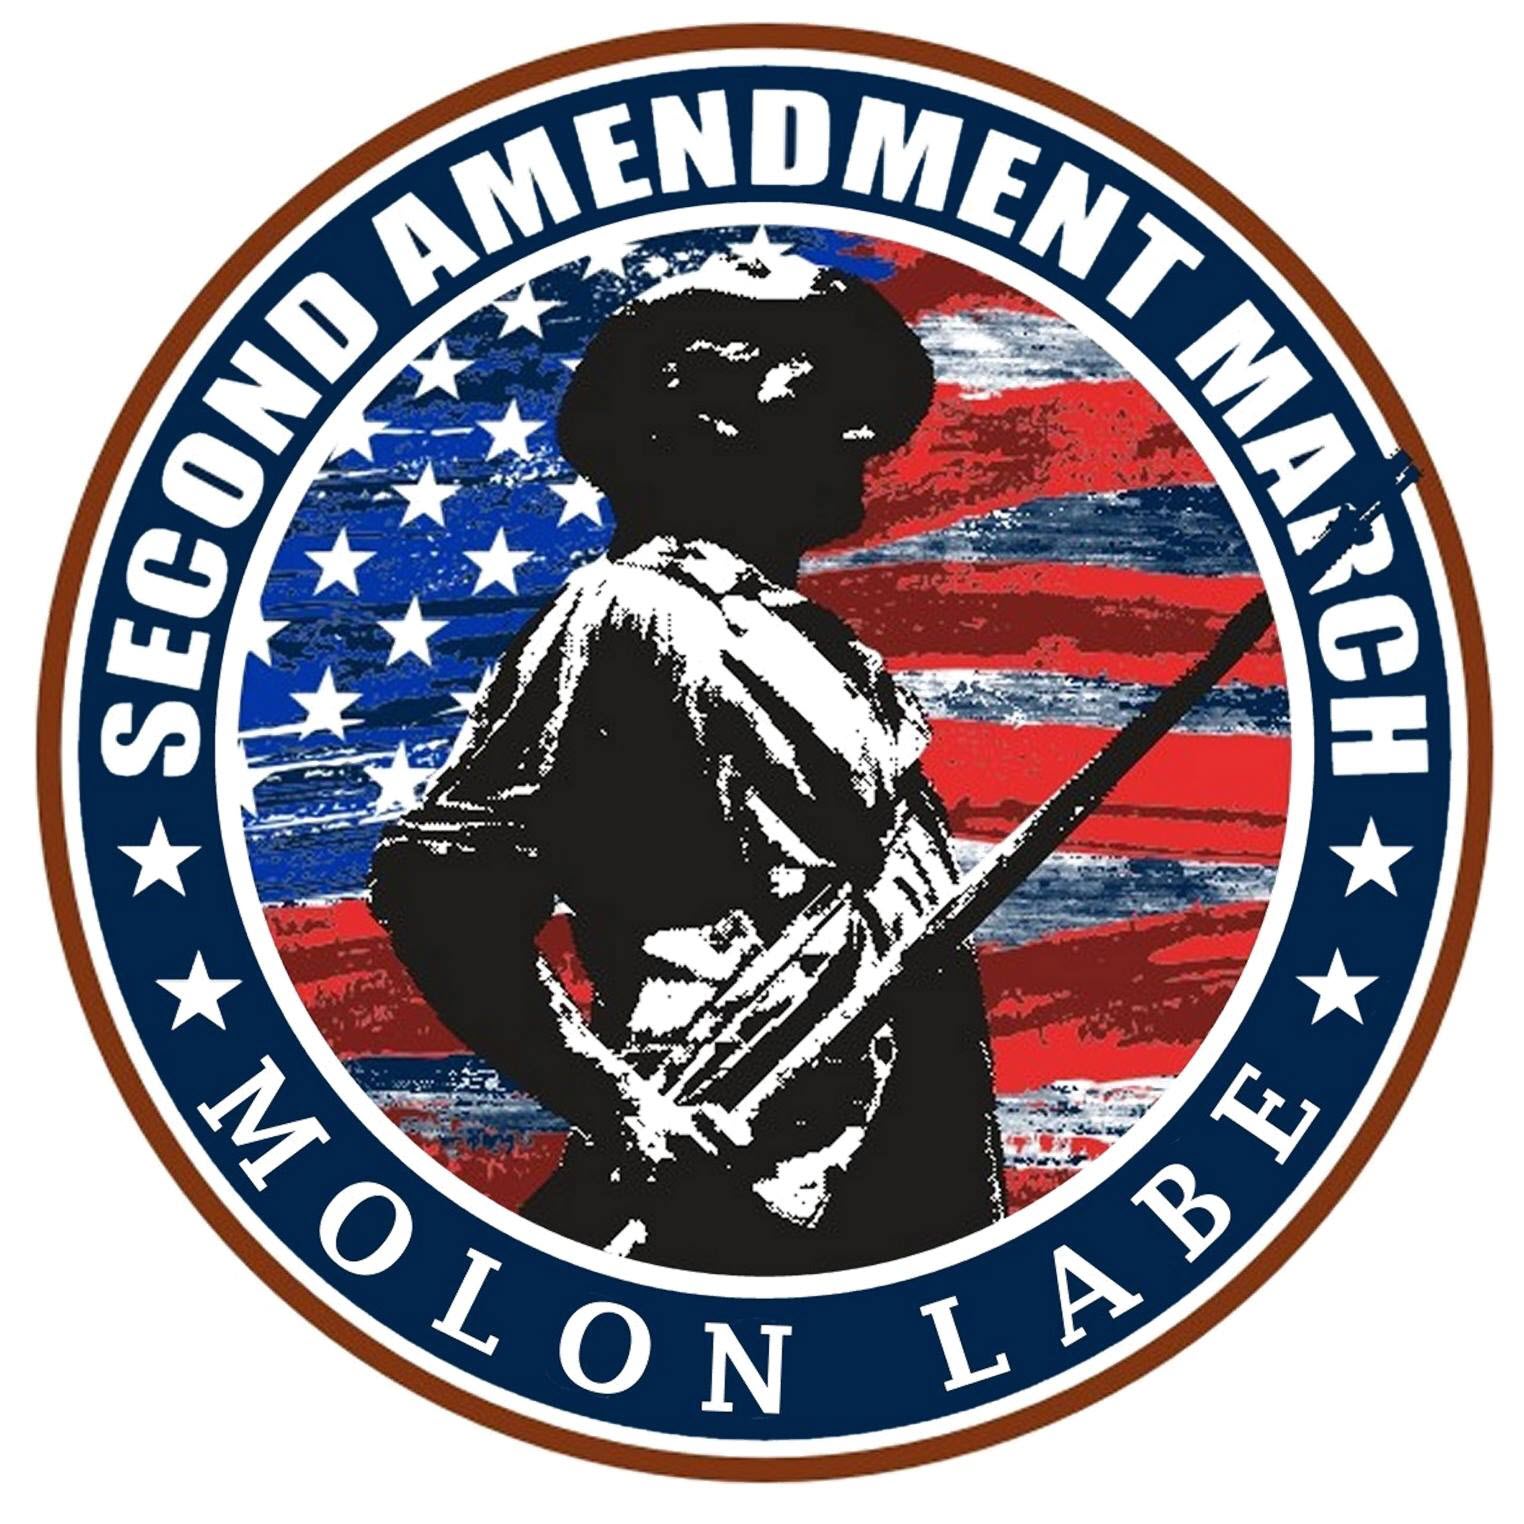 Second Amendment March logo